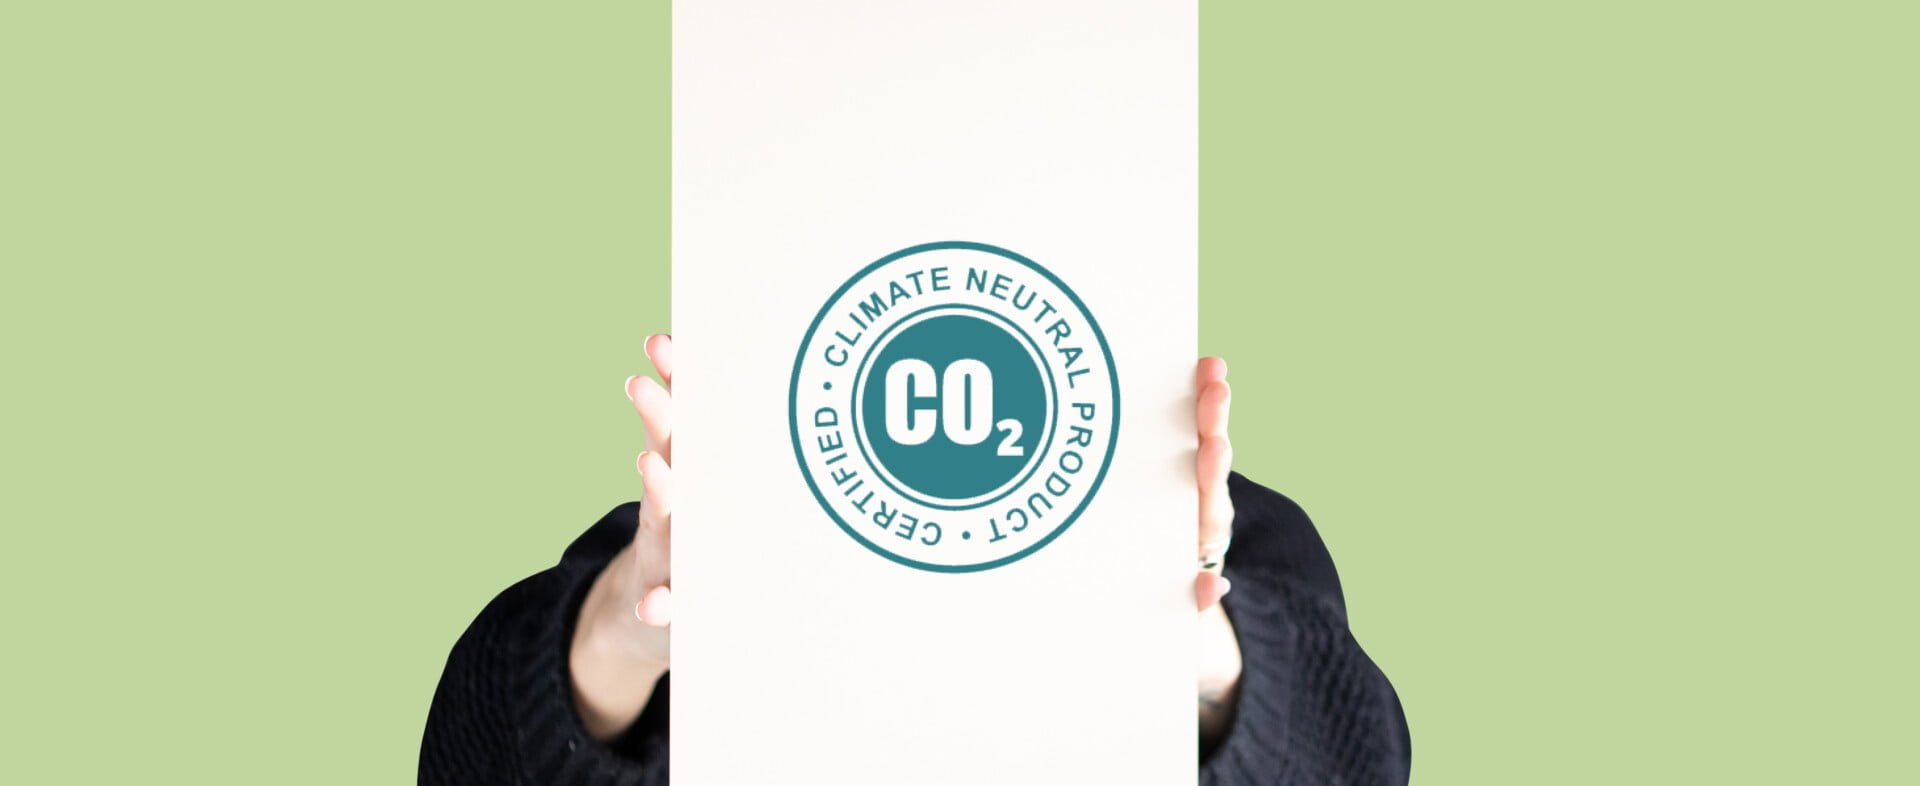 PAPERWISE È NEUTRALE RISPETTO ALLA CO2: COME MAI?